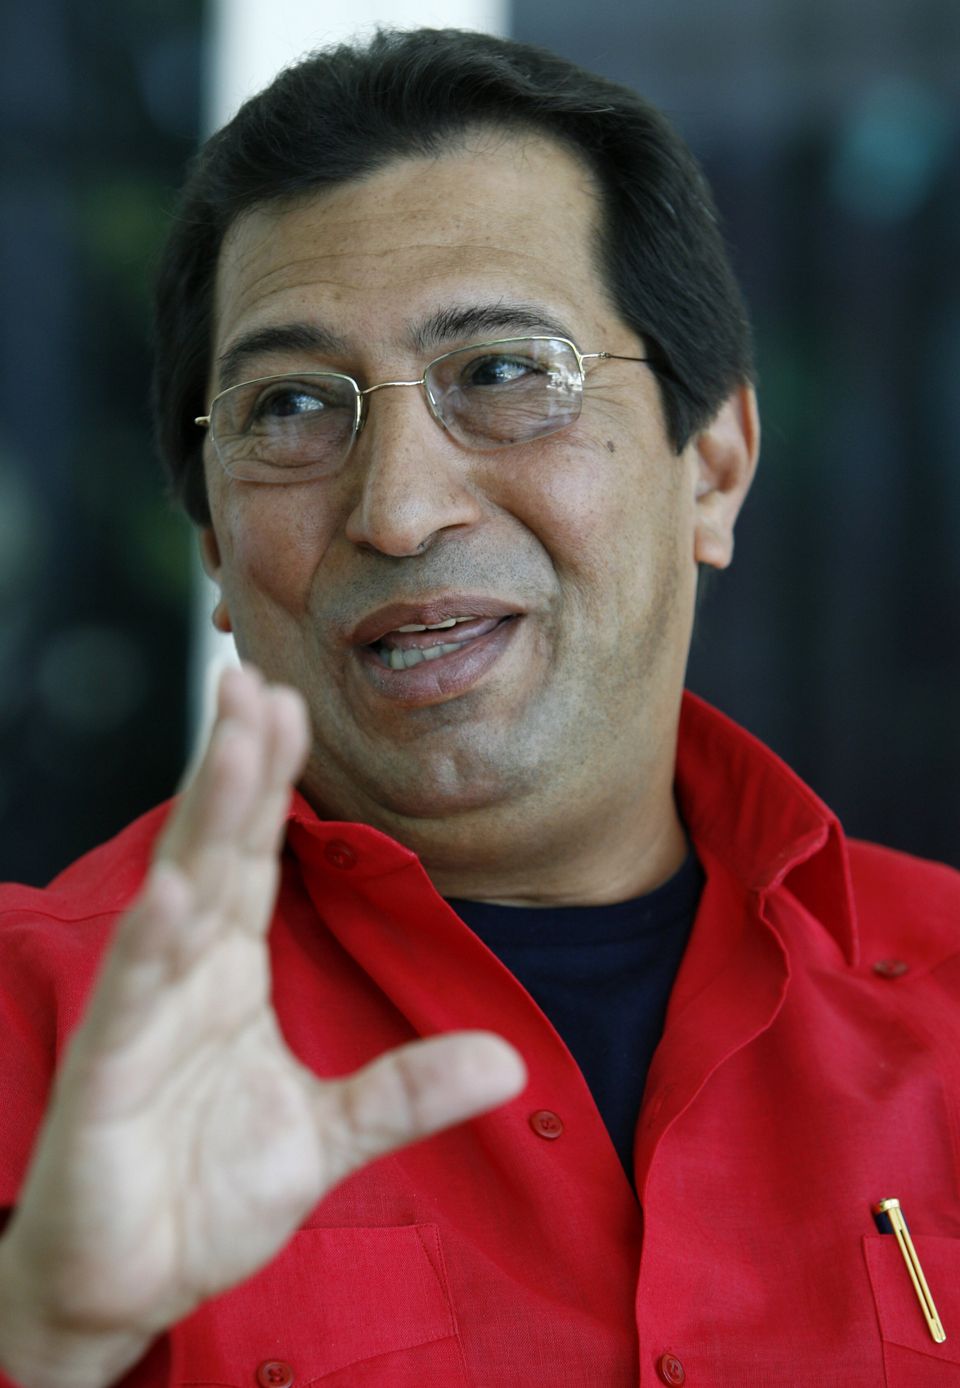 Adan Chavez